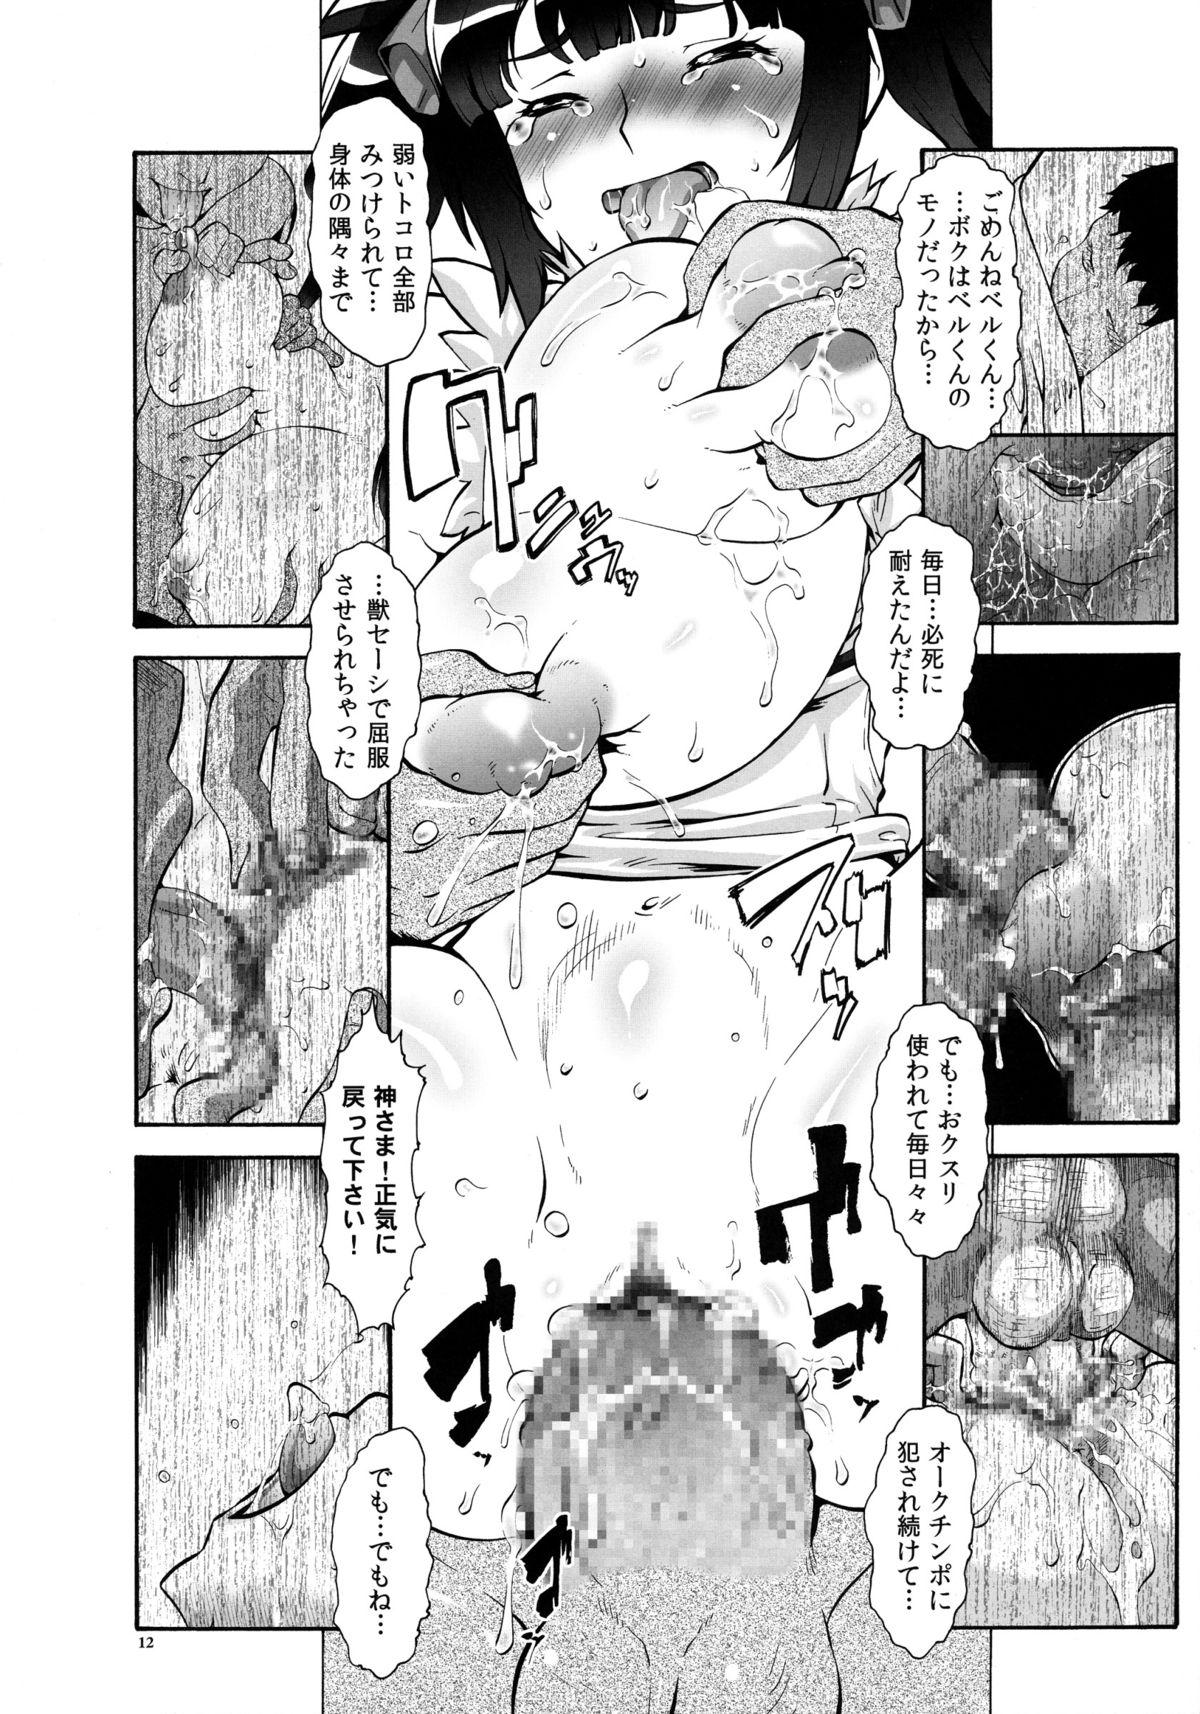 Romantic Danmachi - Dungeon ni deai o motomeru no wa machigatteiru darou ka Toes - Page 12